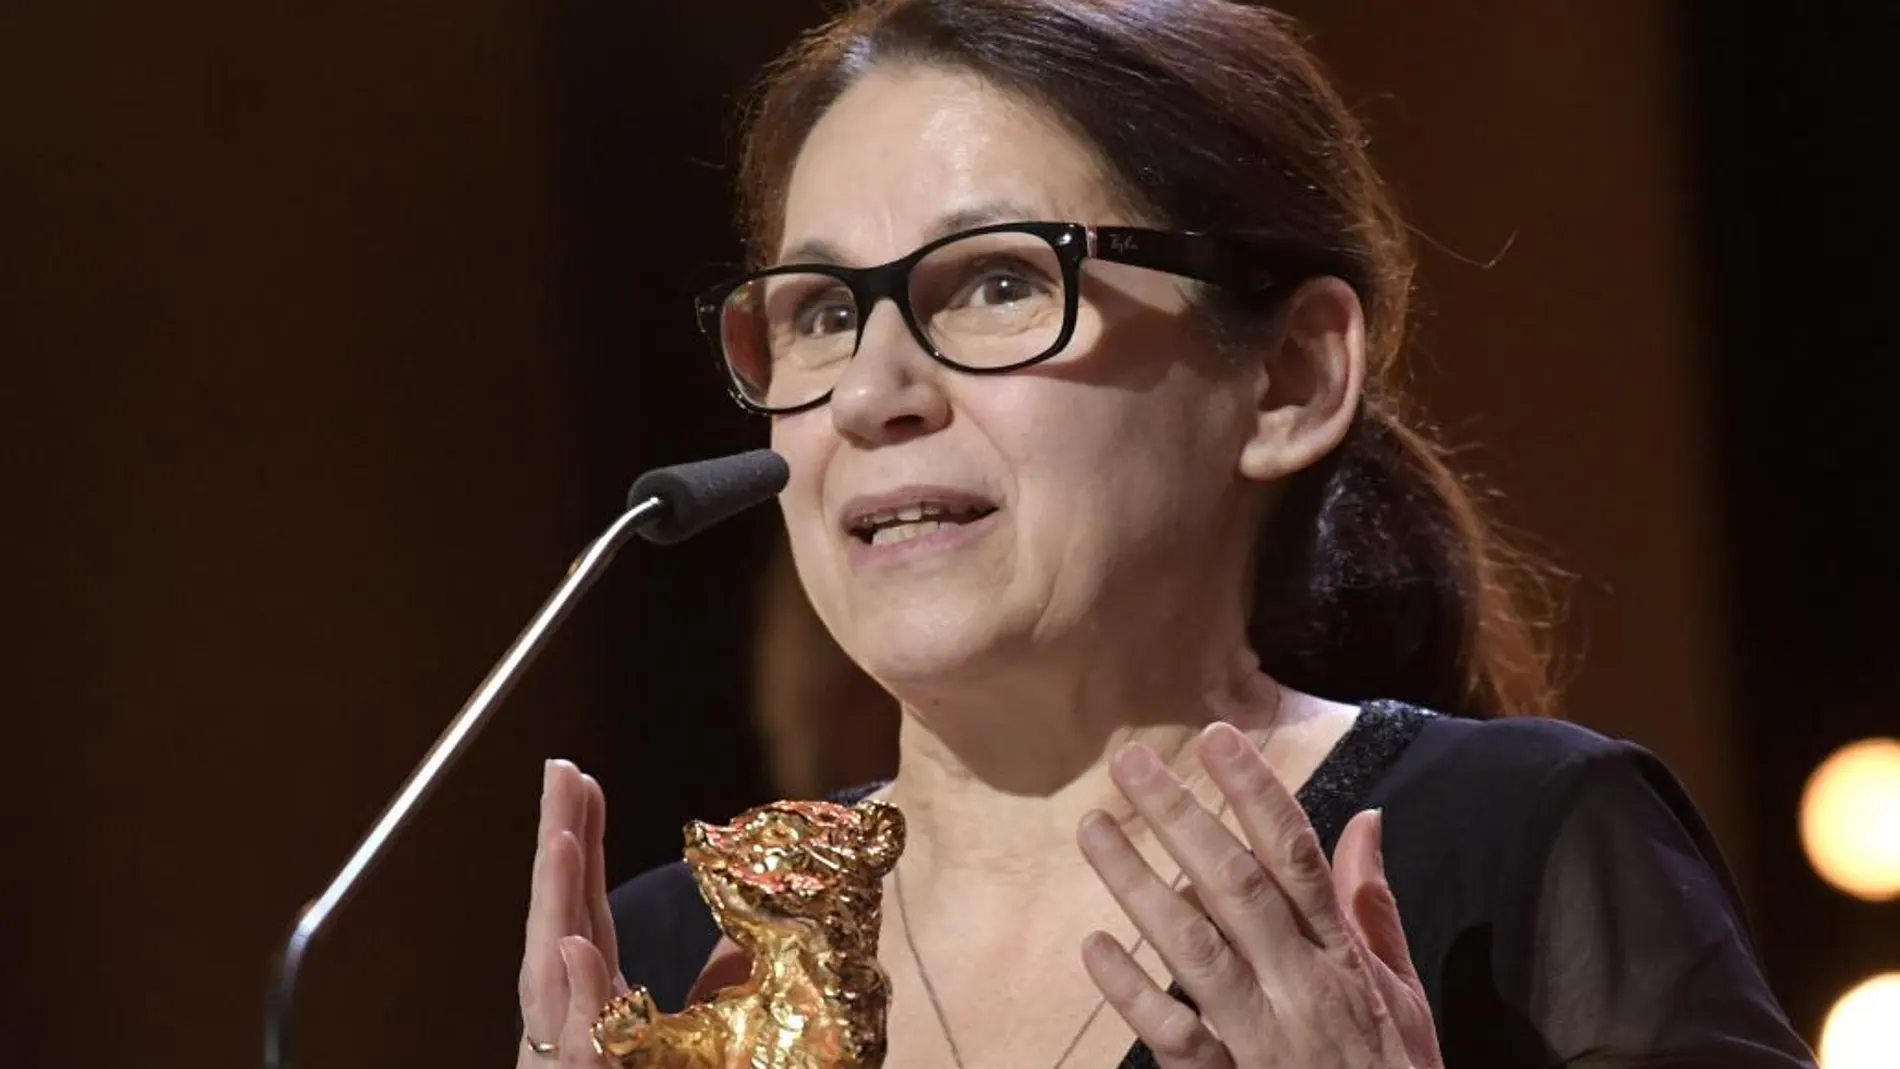 La directora húngara Ildiko Enyedi reciben el León de Oro de la Berlinale.